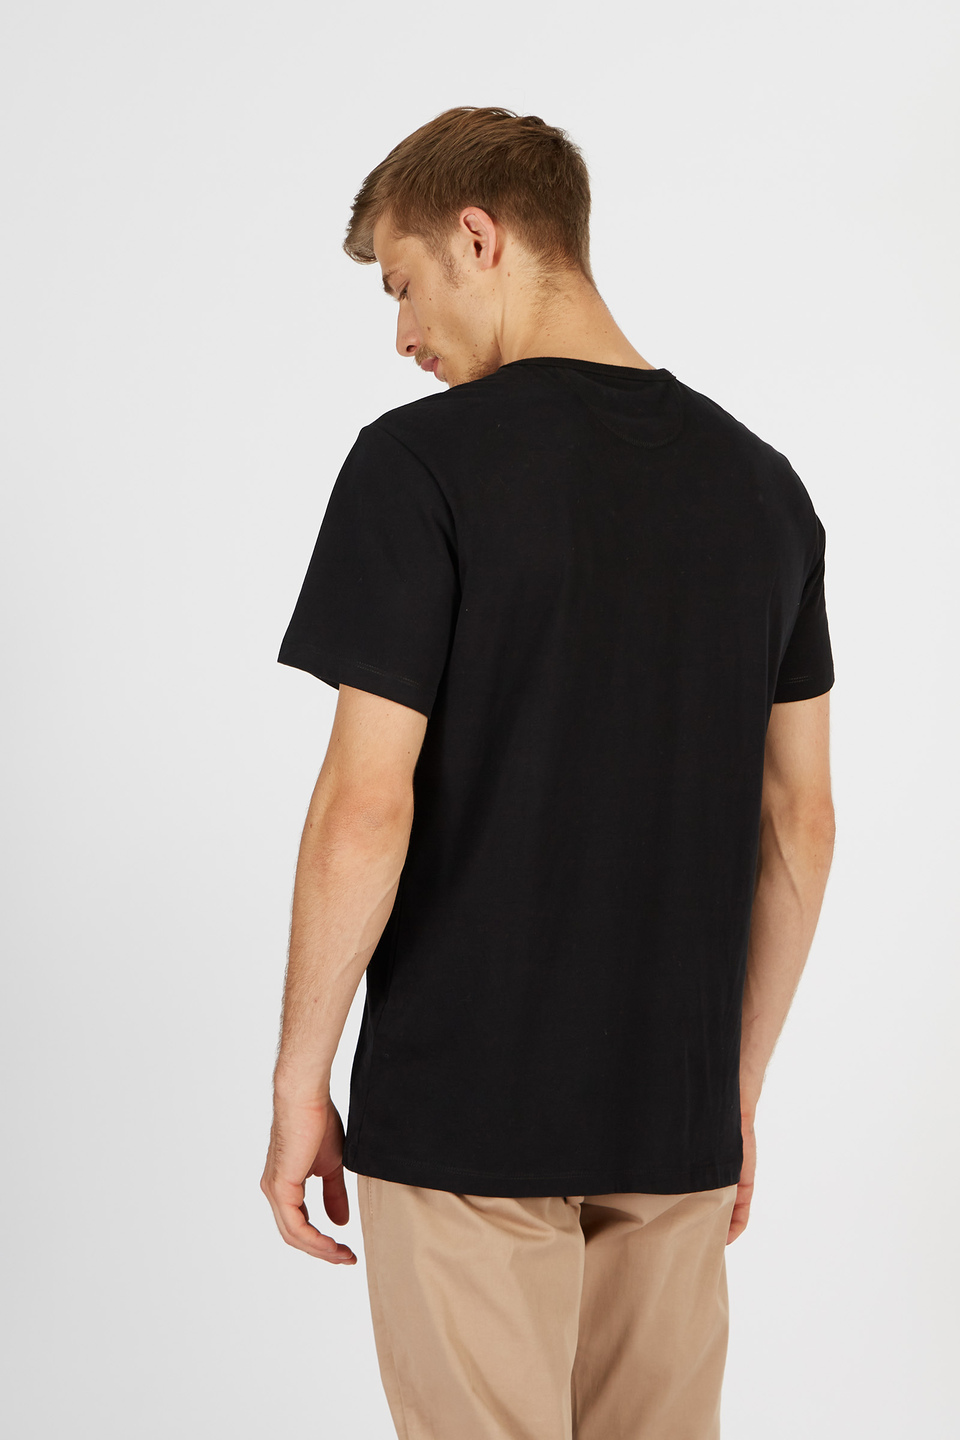 Camiseta de algodón 100% comfort fit de manga corta para hombre | La Martina - Official Online Shop